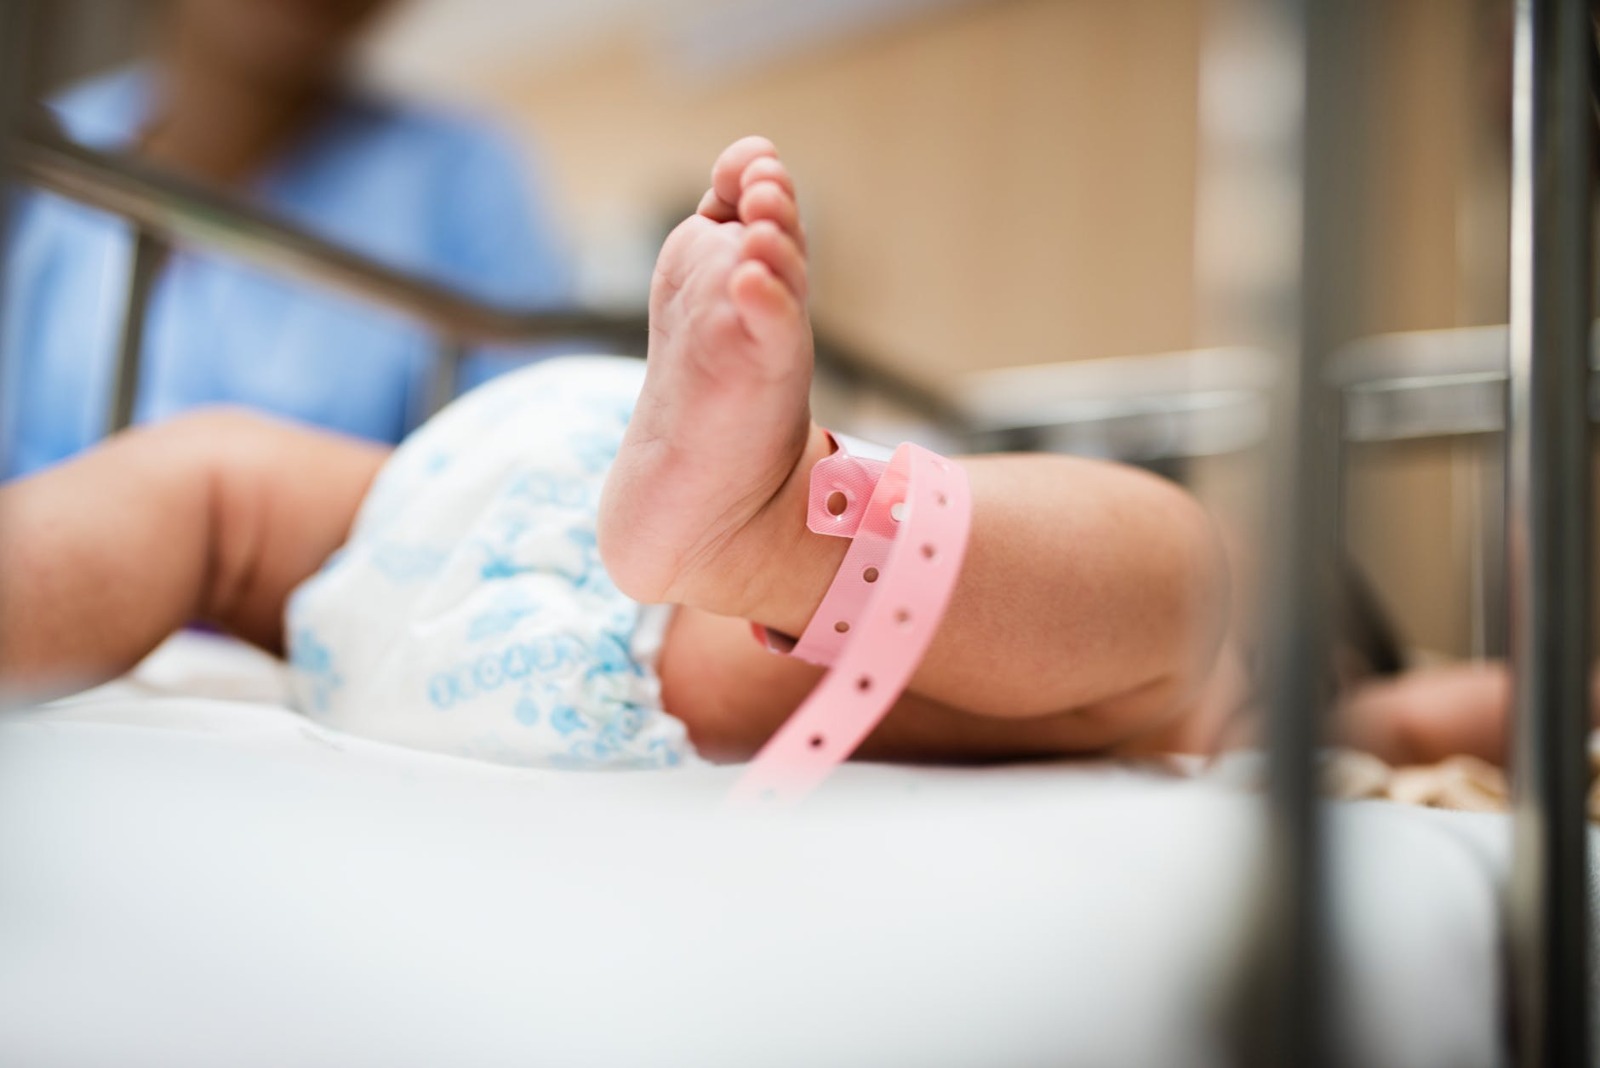 Неонатальный скрининг помог выявить СМА на доклинической стадии у шести новорожденных